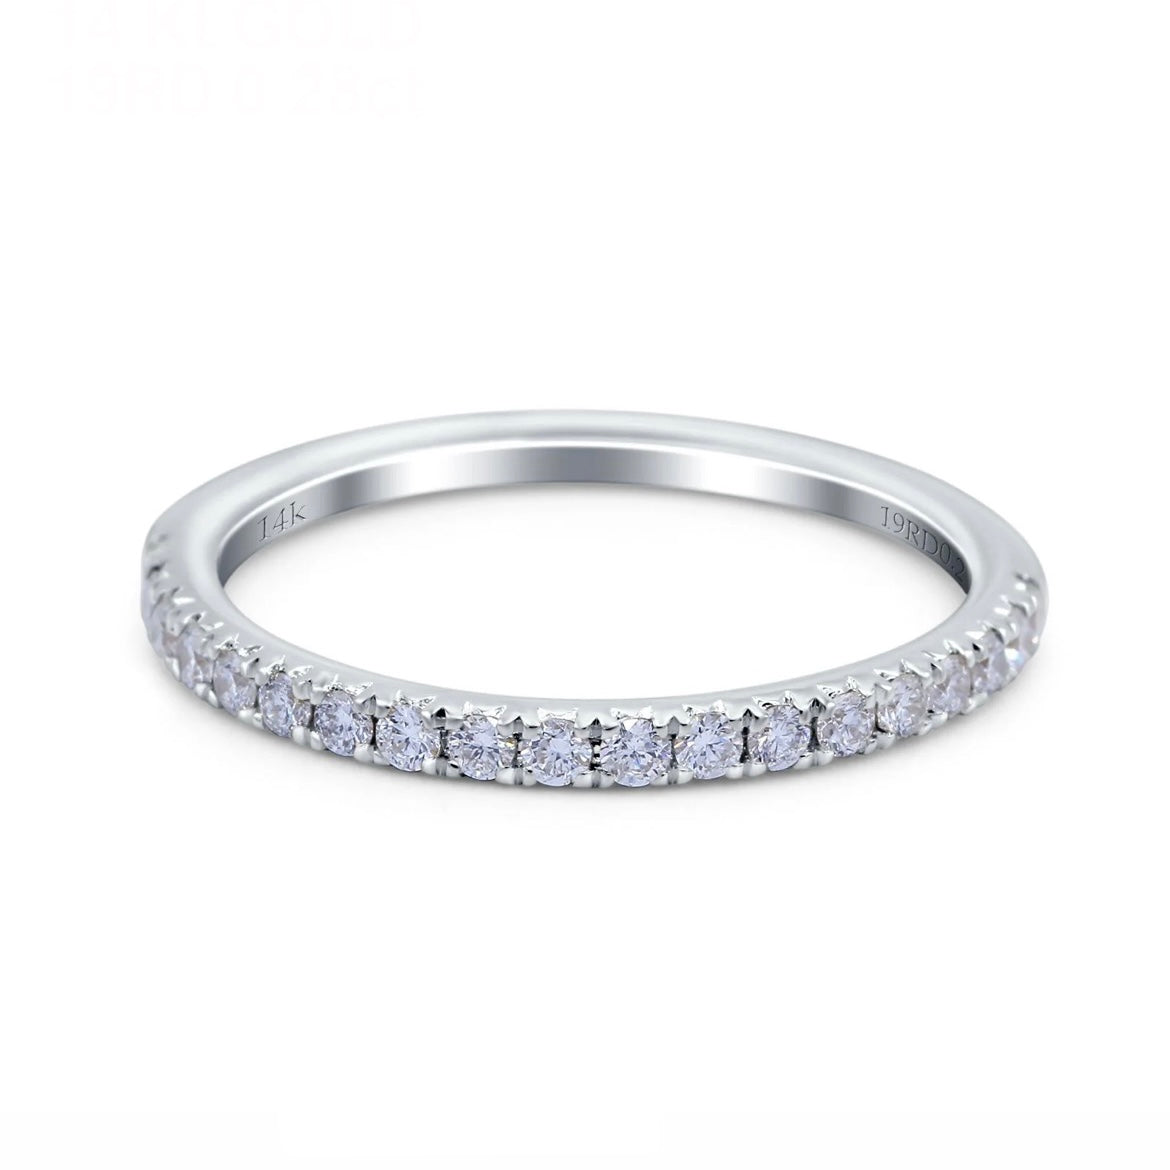 14K Gold Single Row Pave Diamond Wedding Ring